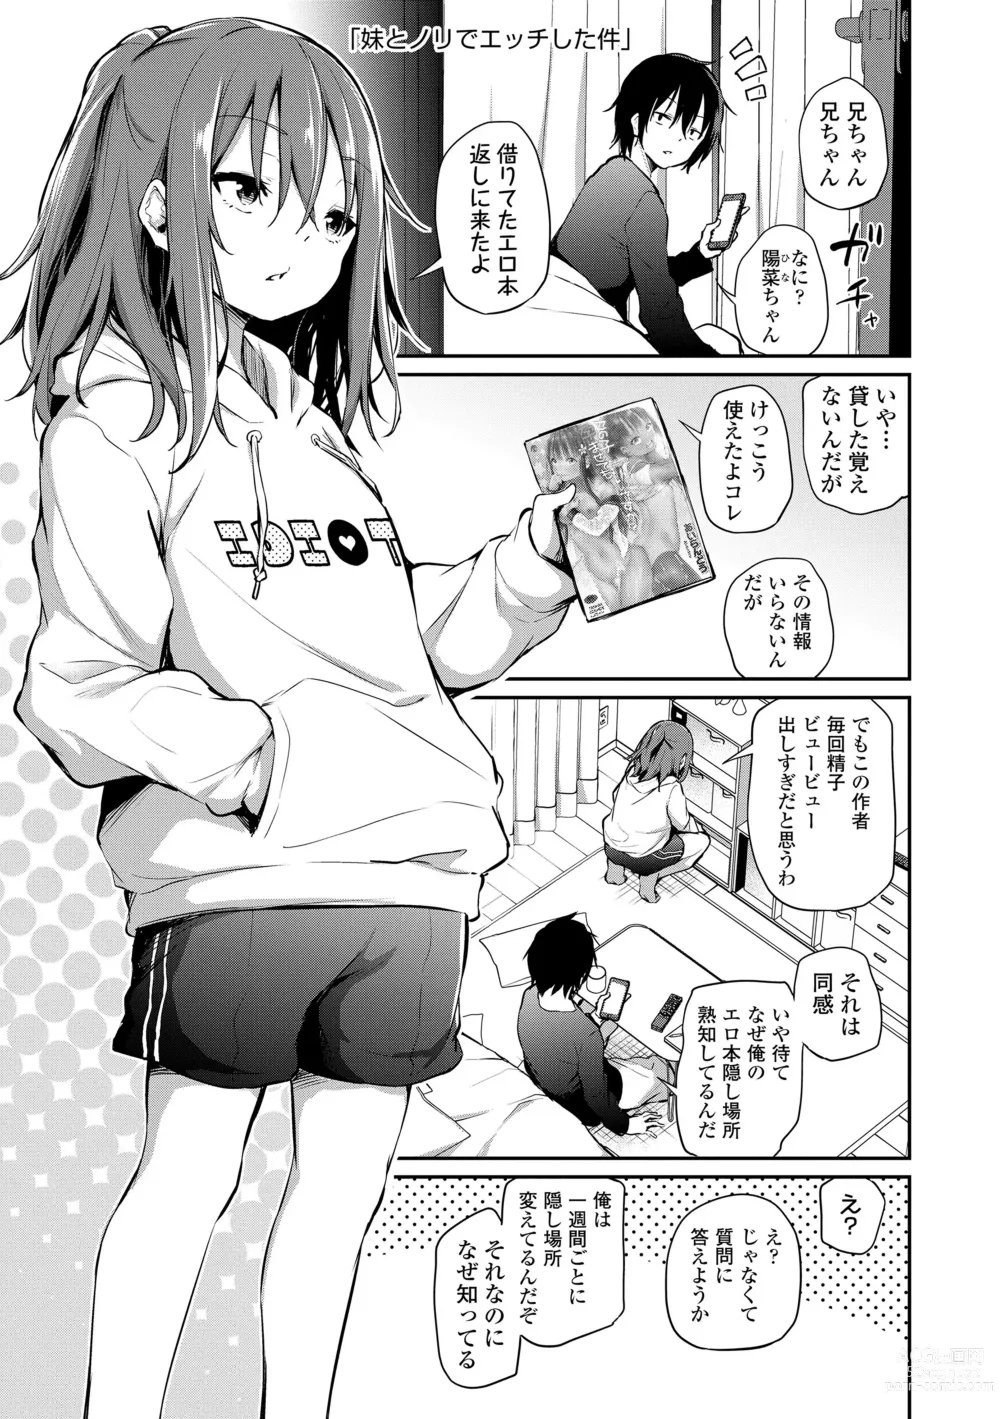 Page 5 of manga Imouto TRIP